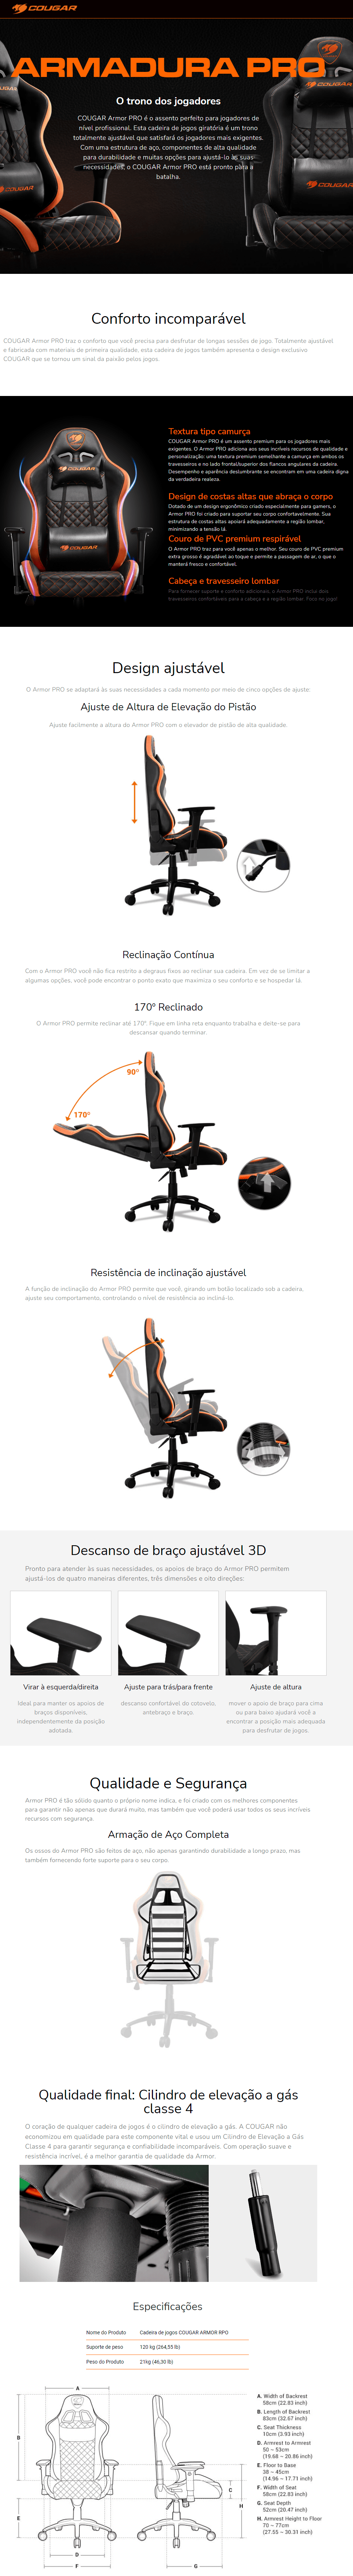 Cadeira de escritório Cougar Armor Titan Pro gamer ergonômica preto e  laranja com estofado de couro